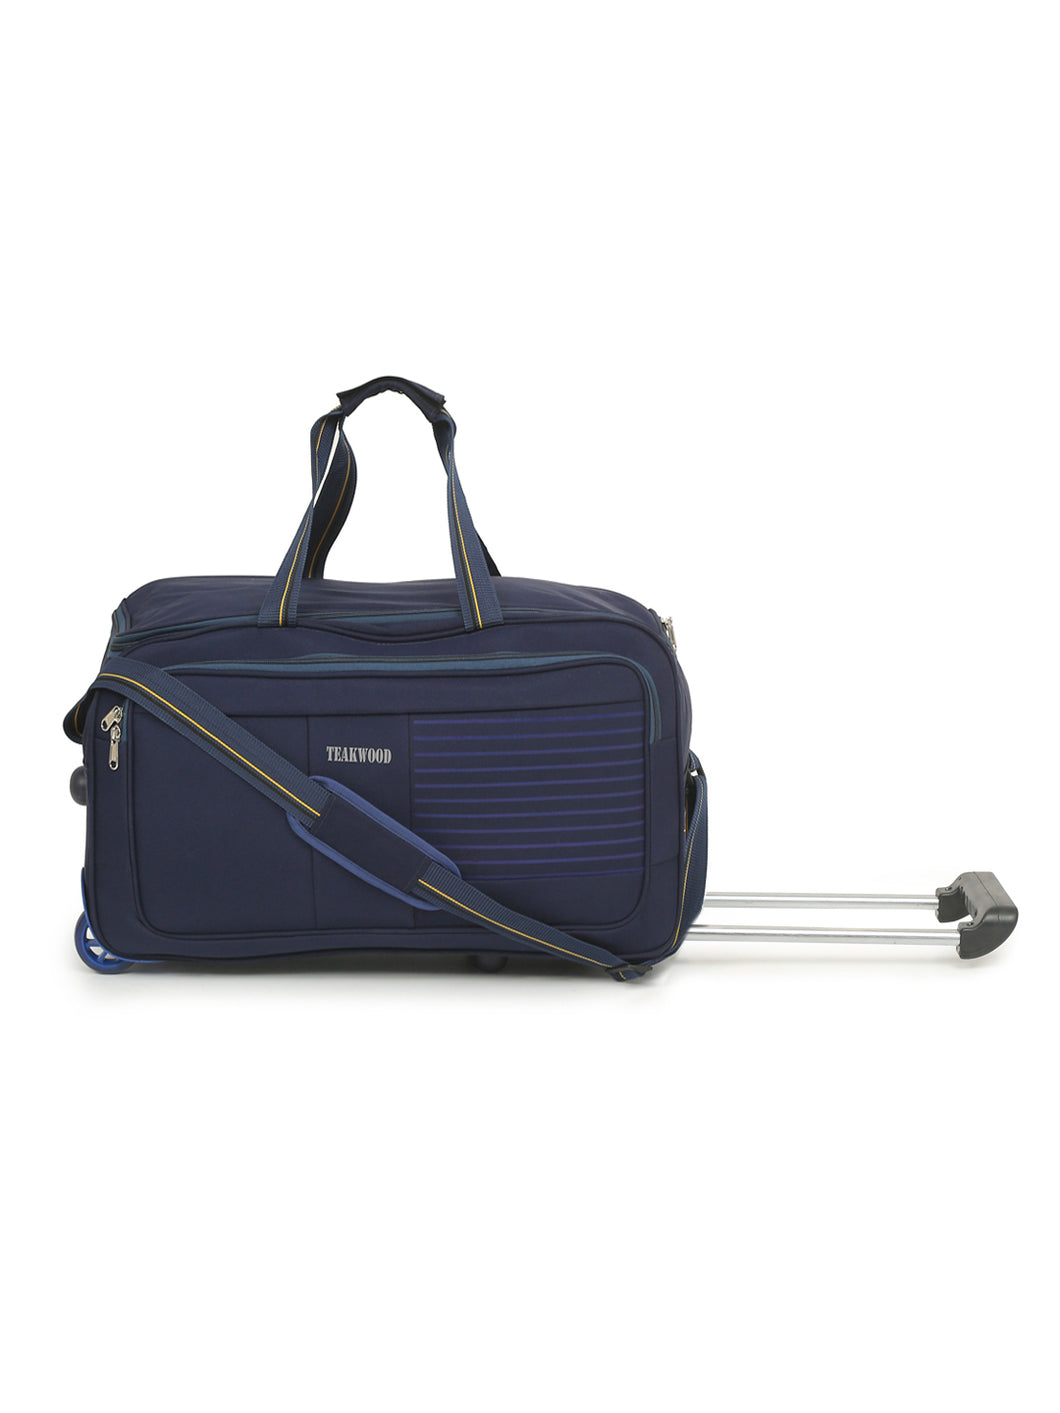 Teakwood Rolling Small Duffel Travel Bag (Blue)